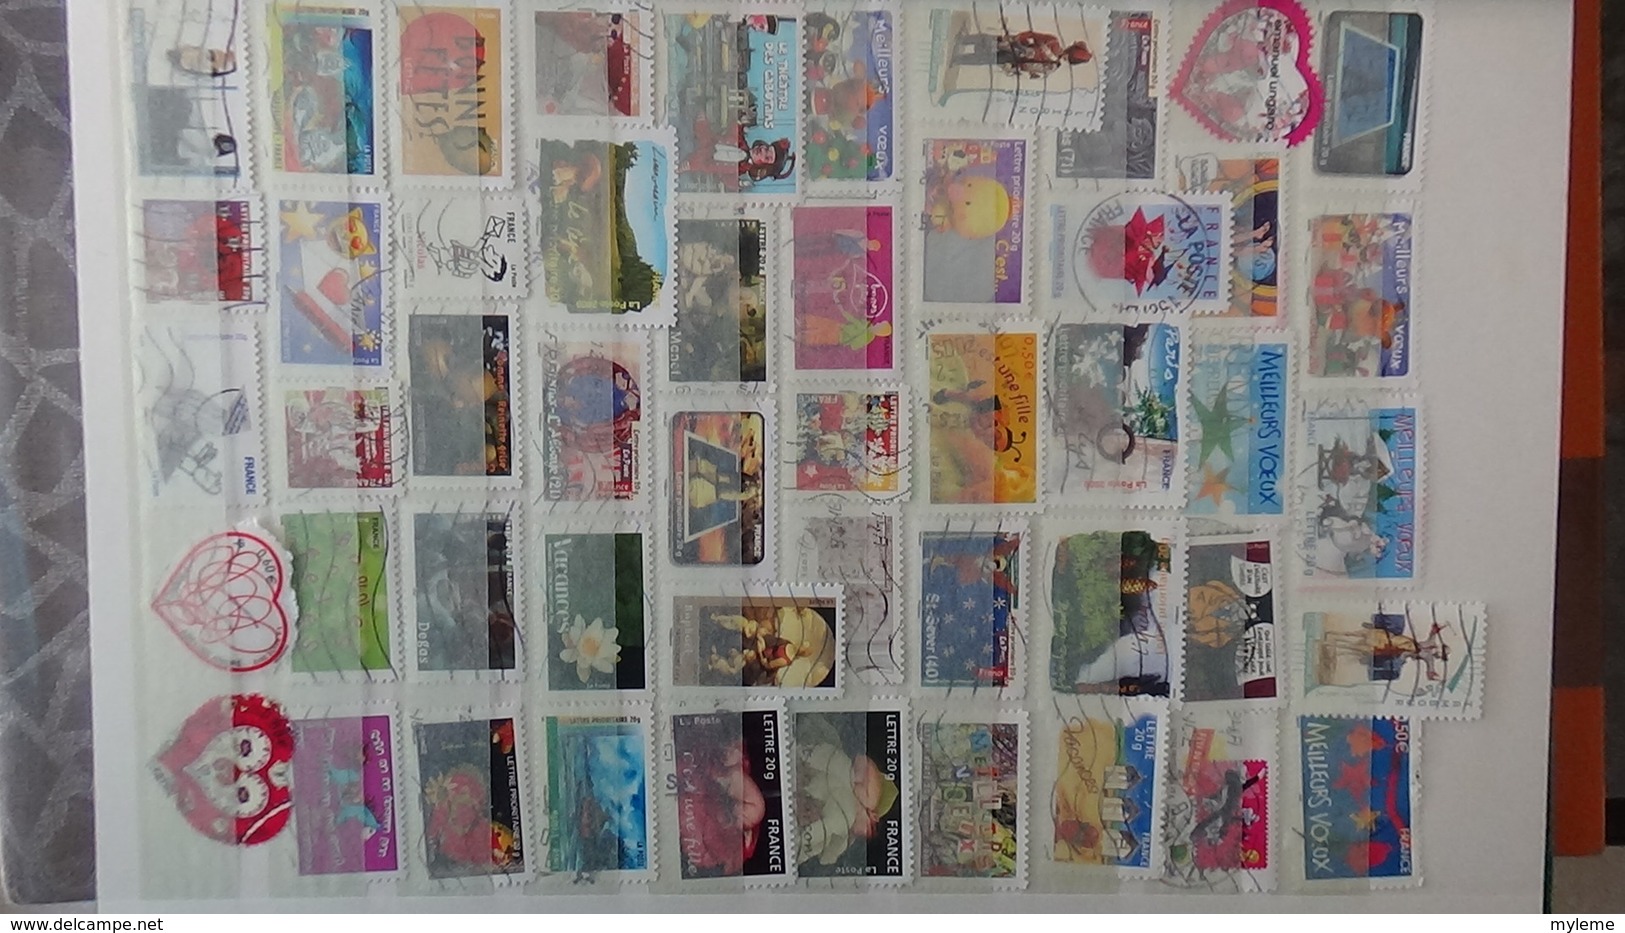 Plus de 780 timbres autocollants de France oblitérés. A saisir à ce prix !!!